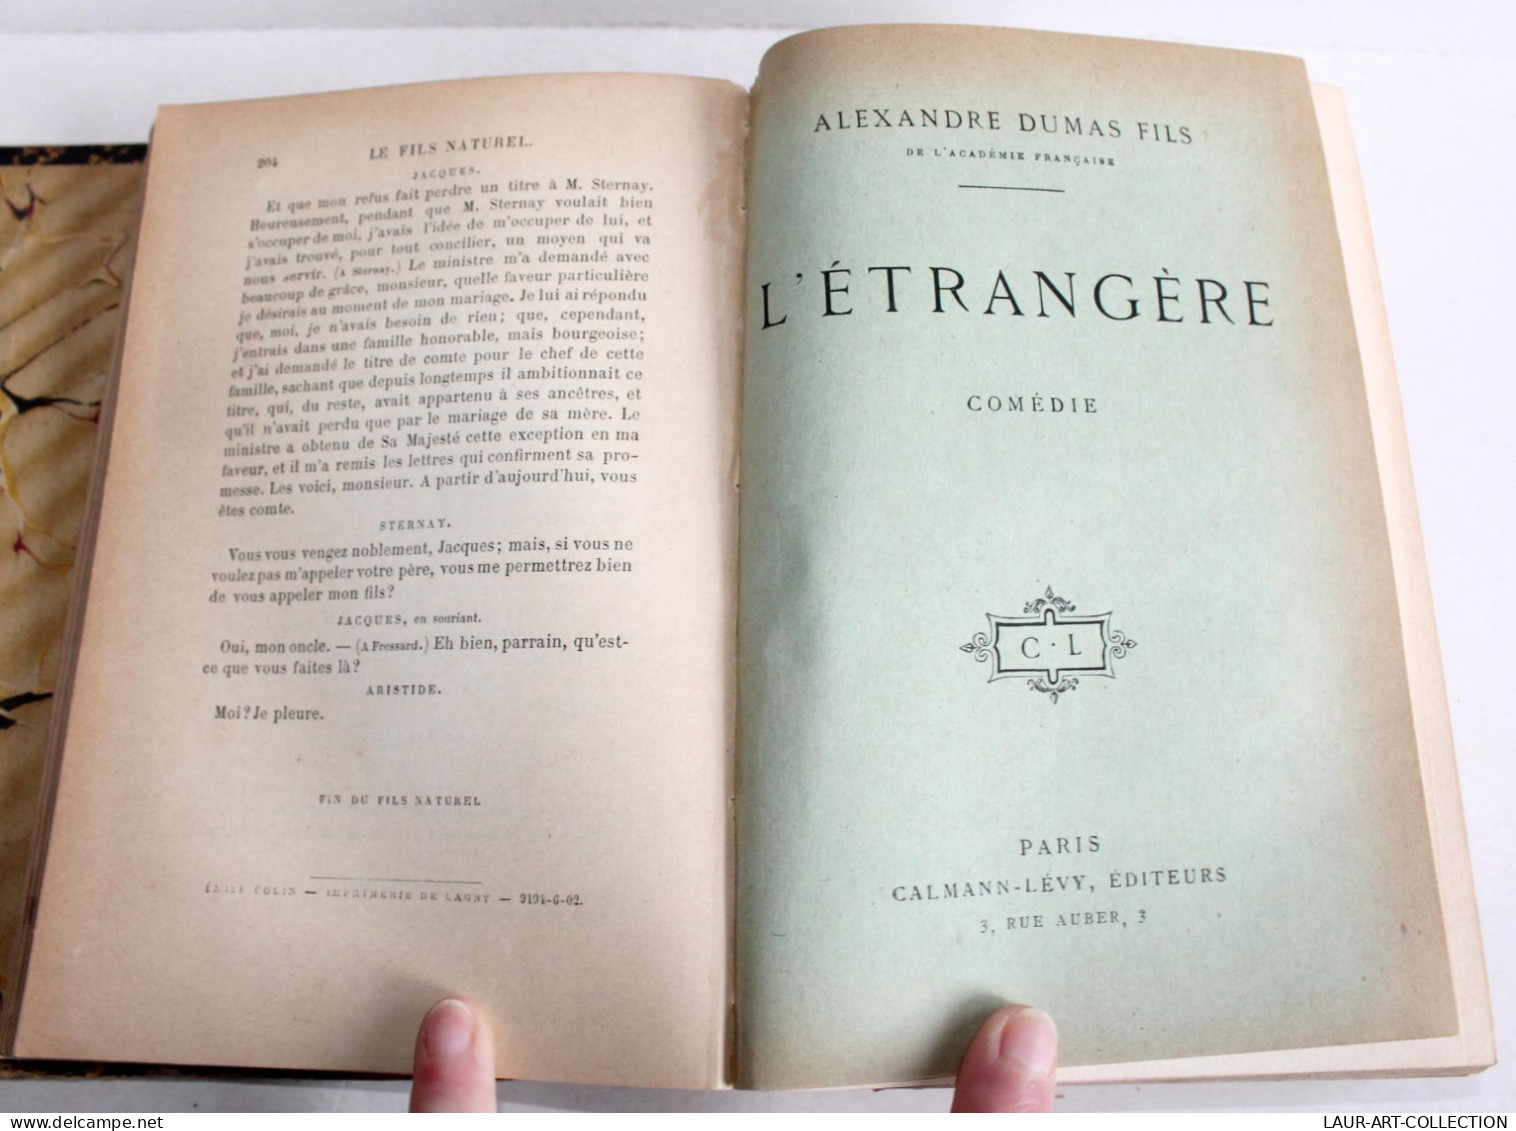 THEATRE RARE 3 COMEDIE XIXe Par DUMAS FILS NATUREL + L'ETRANGERE + PERE PRODIGUE, ANCIEN LIVRE XIXe SIECLE (1803.242) - Franse Schrijvers